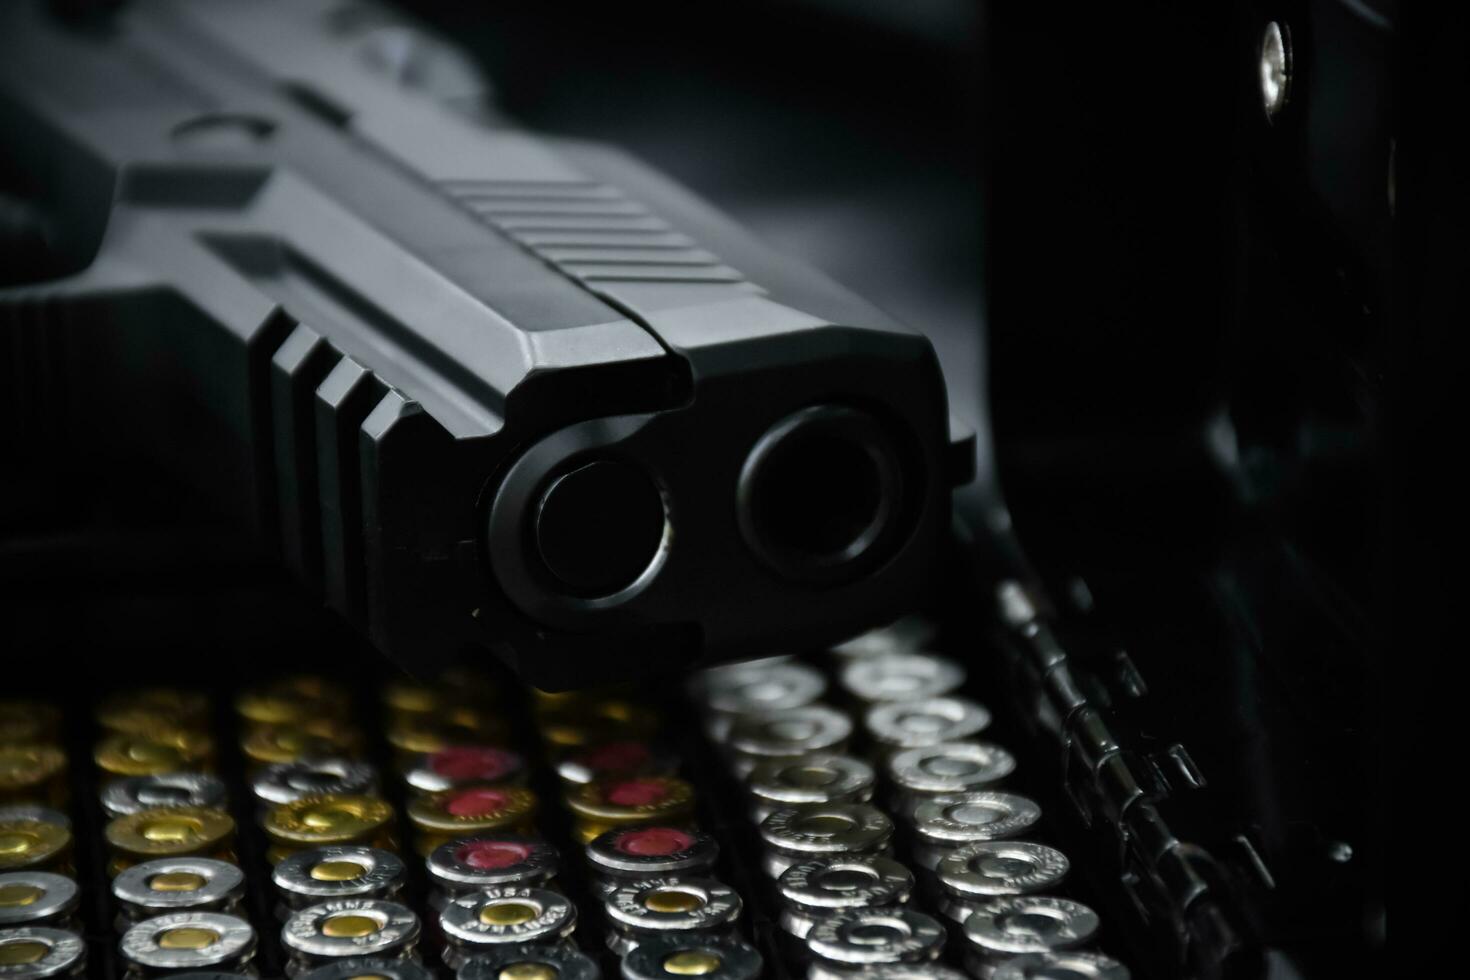 automatisk svart 9mm pistol och kulor på svart läder bakgrund, selektiv och mjuk fokus. foto